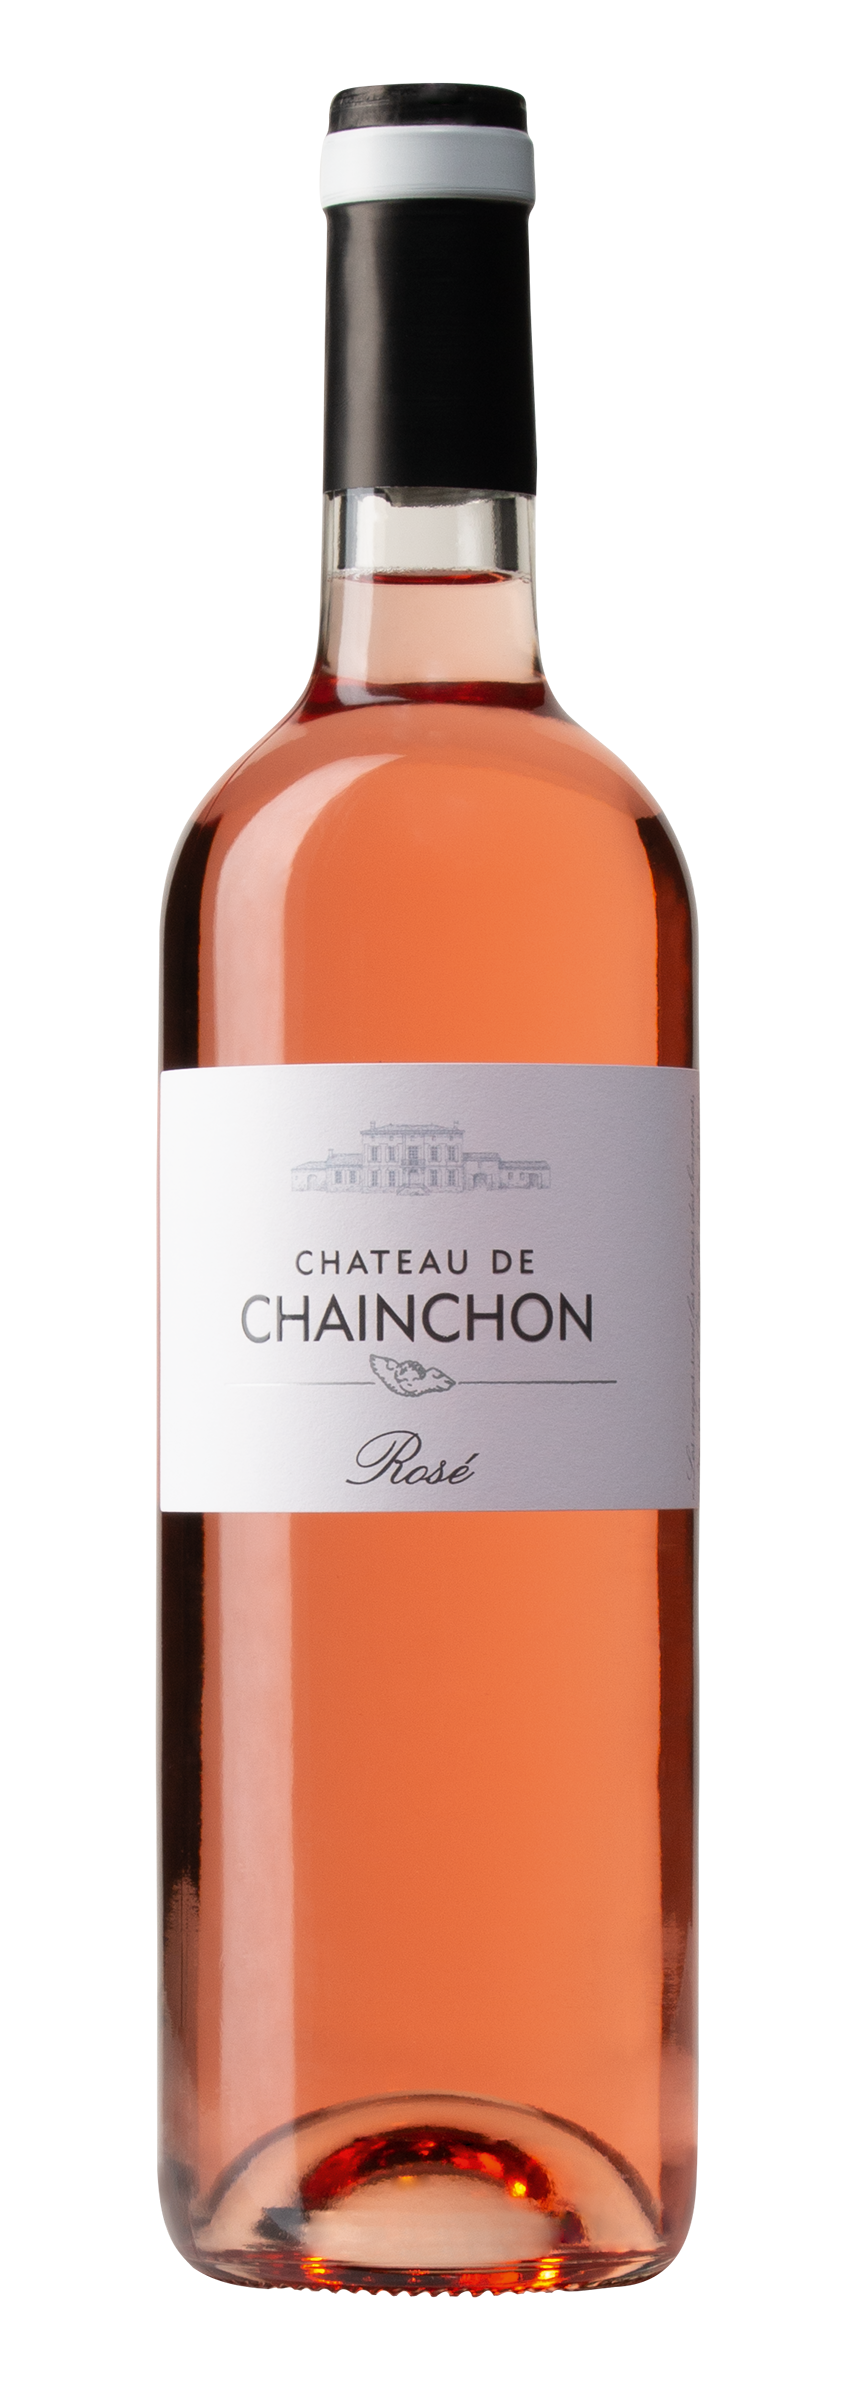 Le Rosé de Chainchon, rosé